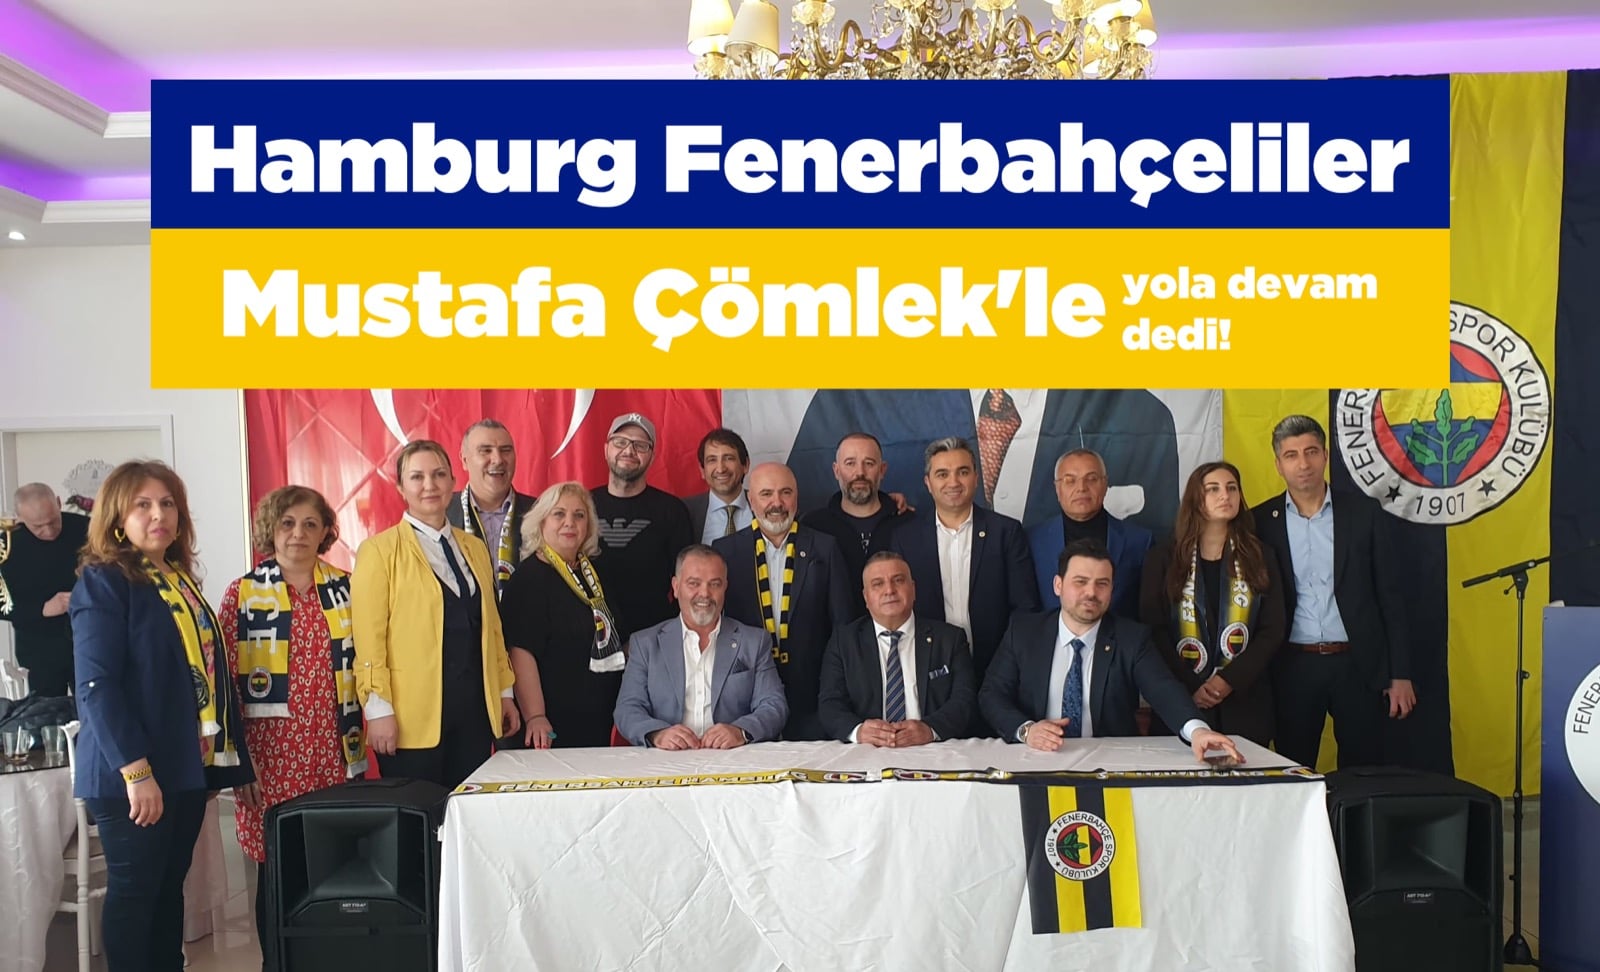 Hamburg Fenerbahçeliler bir kez daha Çömlek’le yola devam